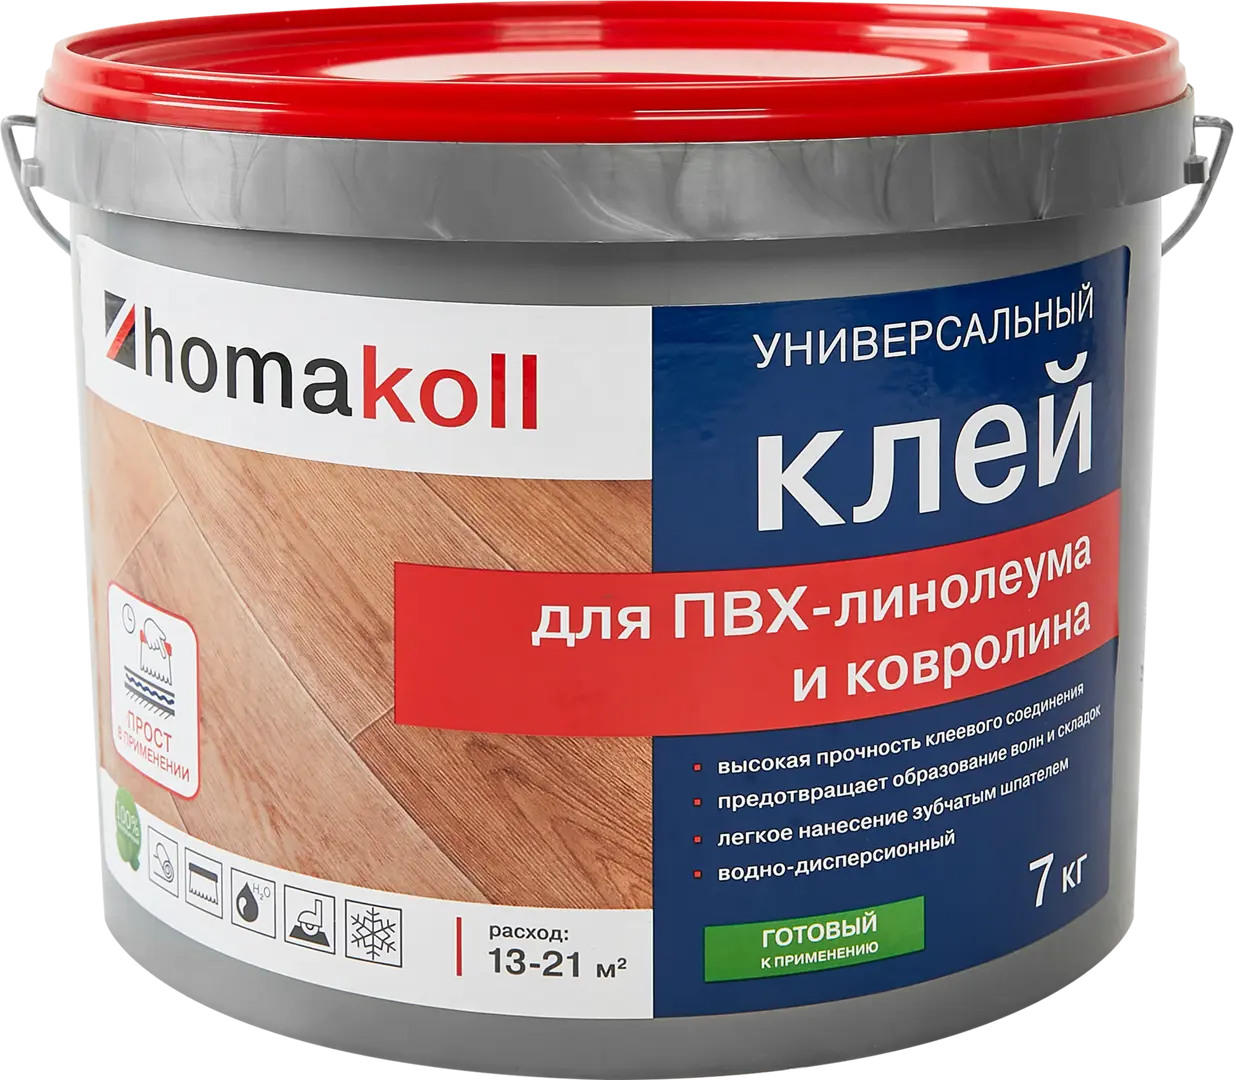 Клей универсальный для линолеума и ковролина Хомакол (Homakoll) 7 кг клей универсальный для линолеума и ковролина хомакол homakoll 4 кг